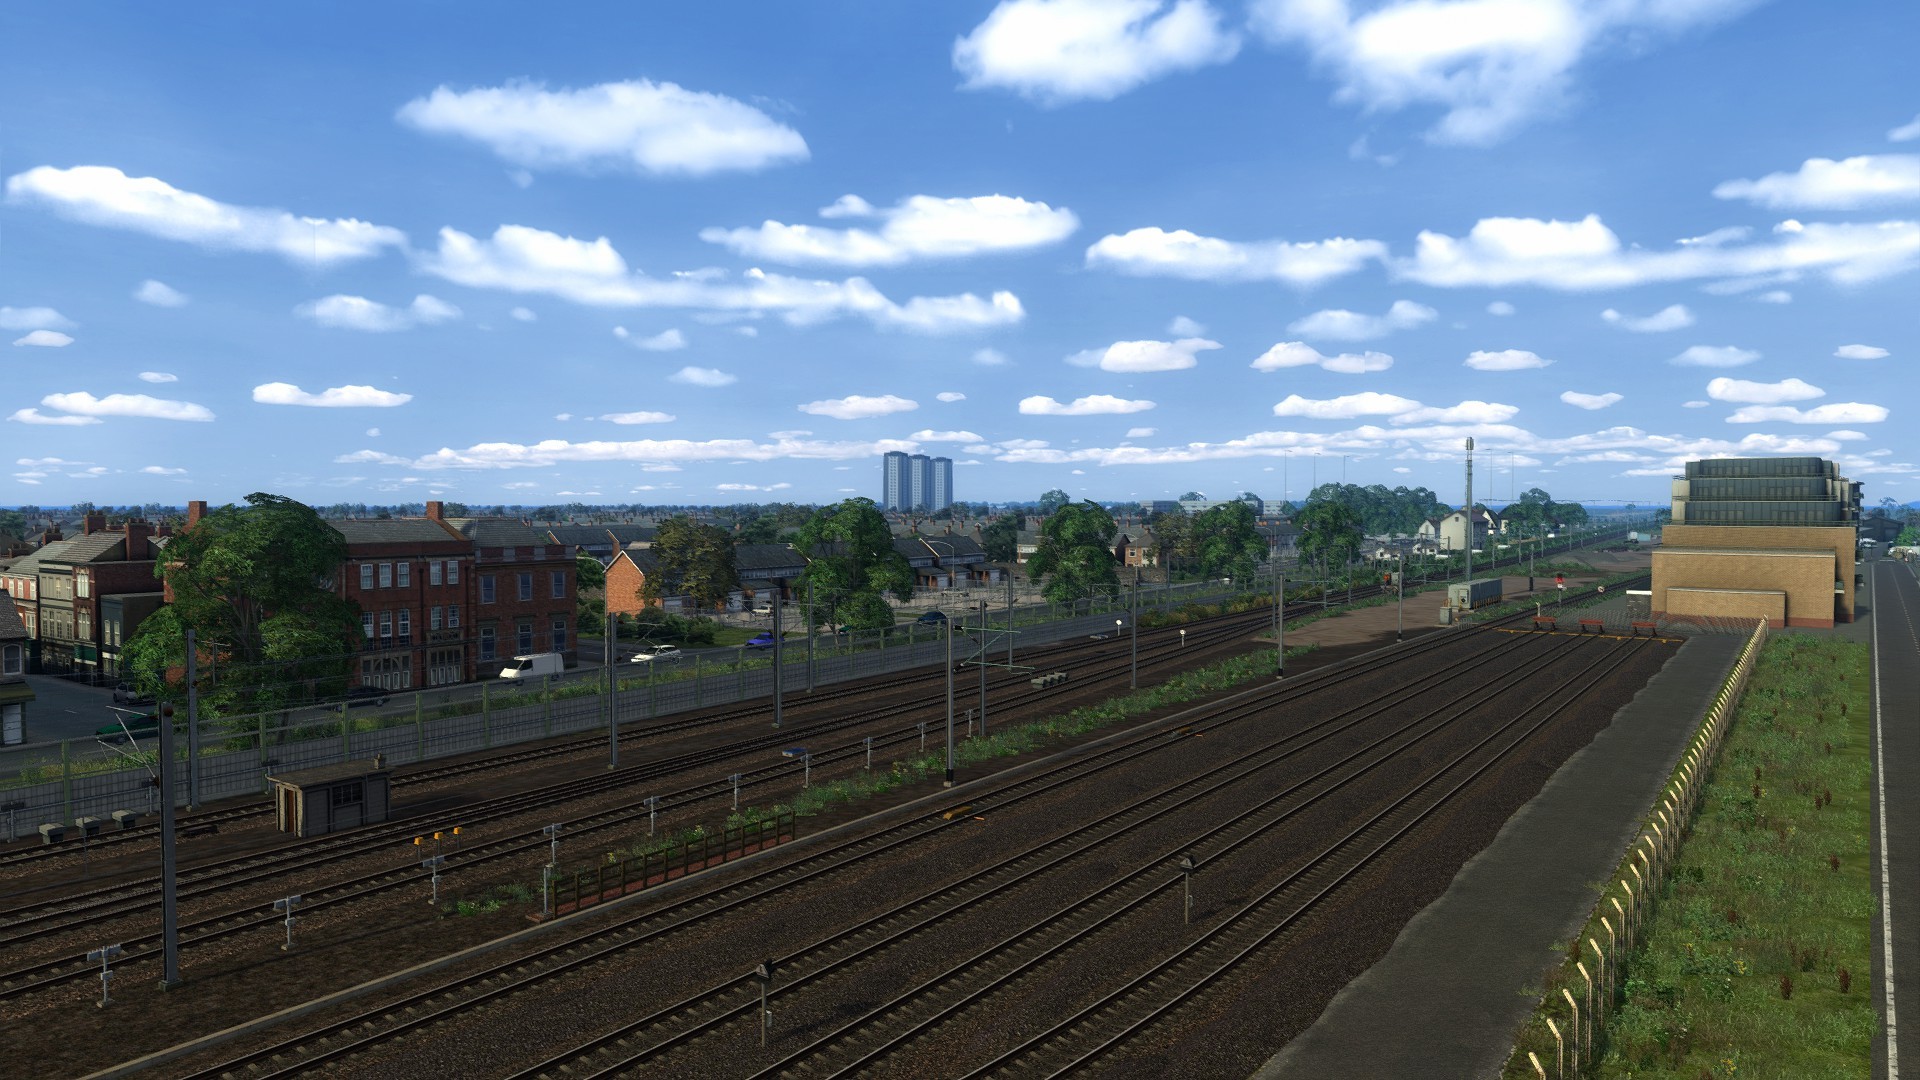 Serinathea sidings along the main line